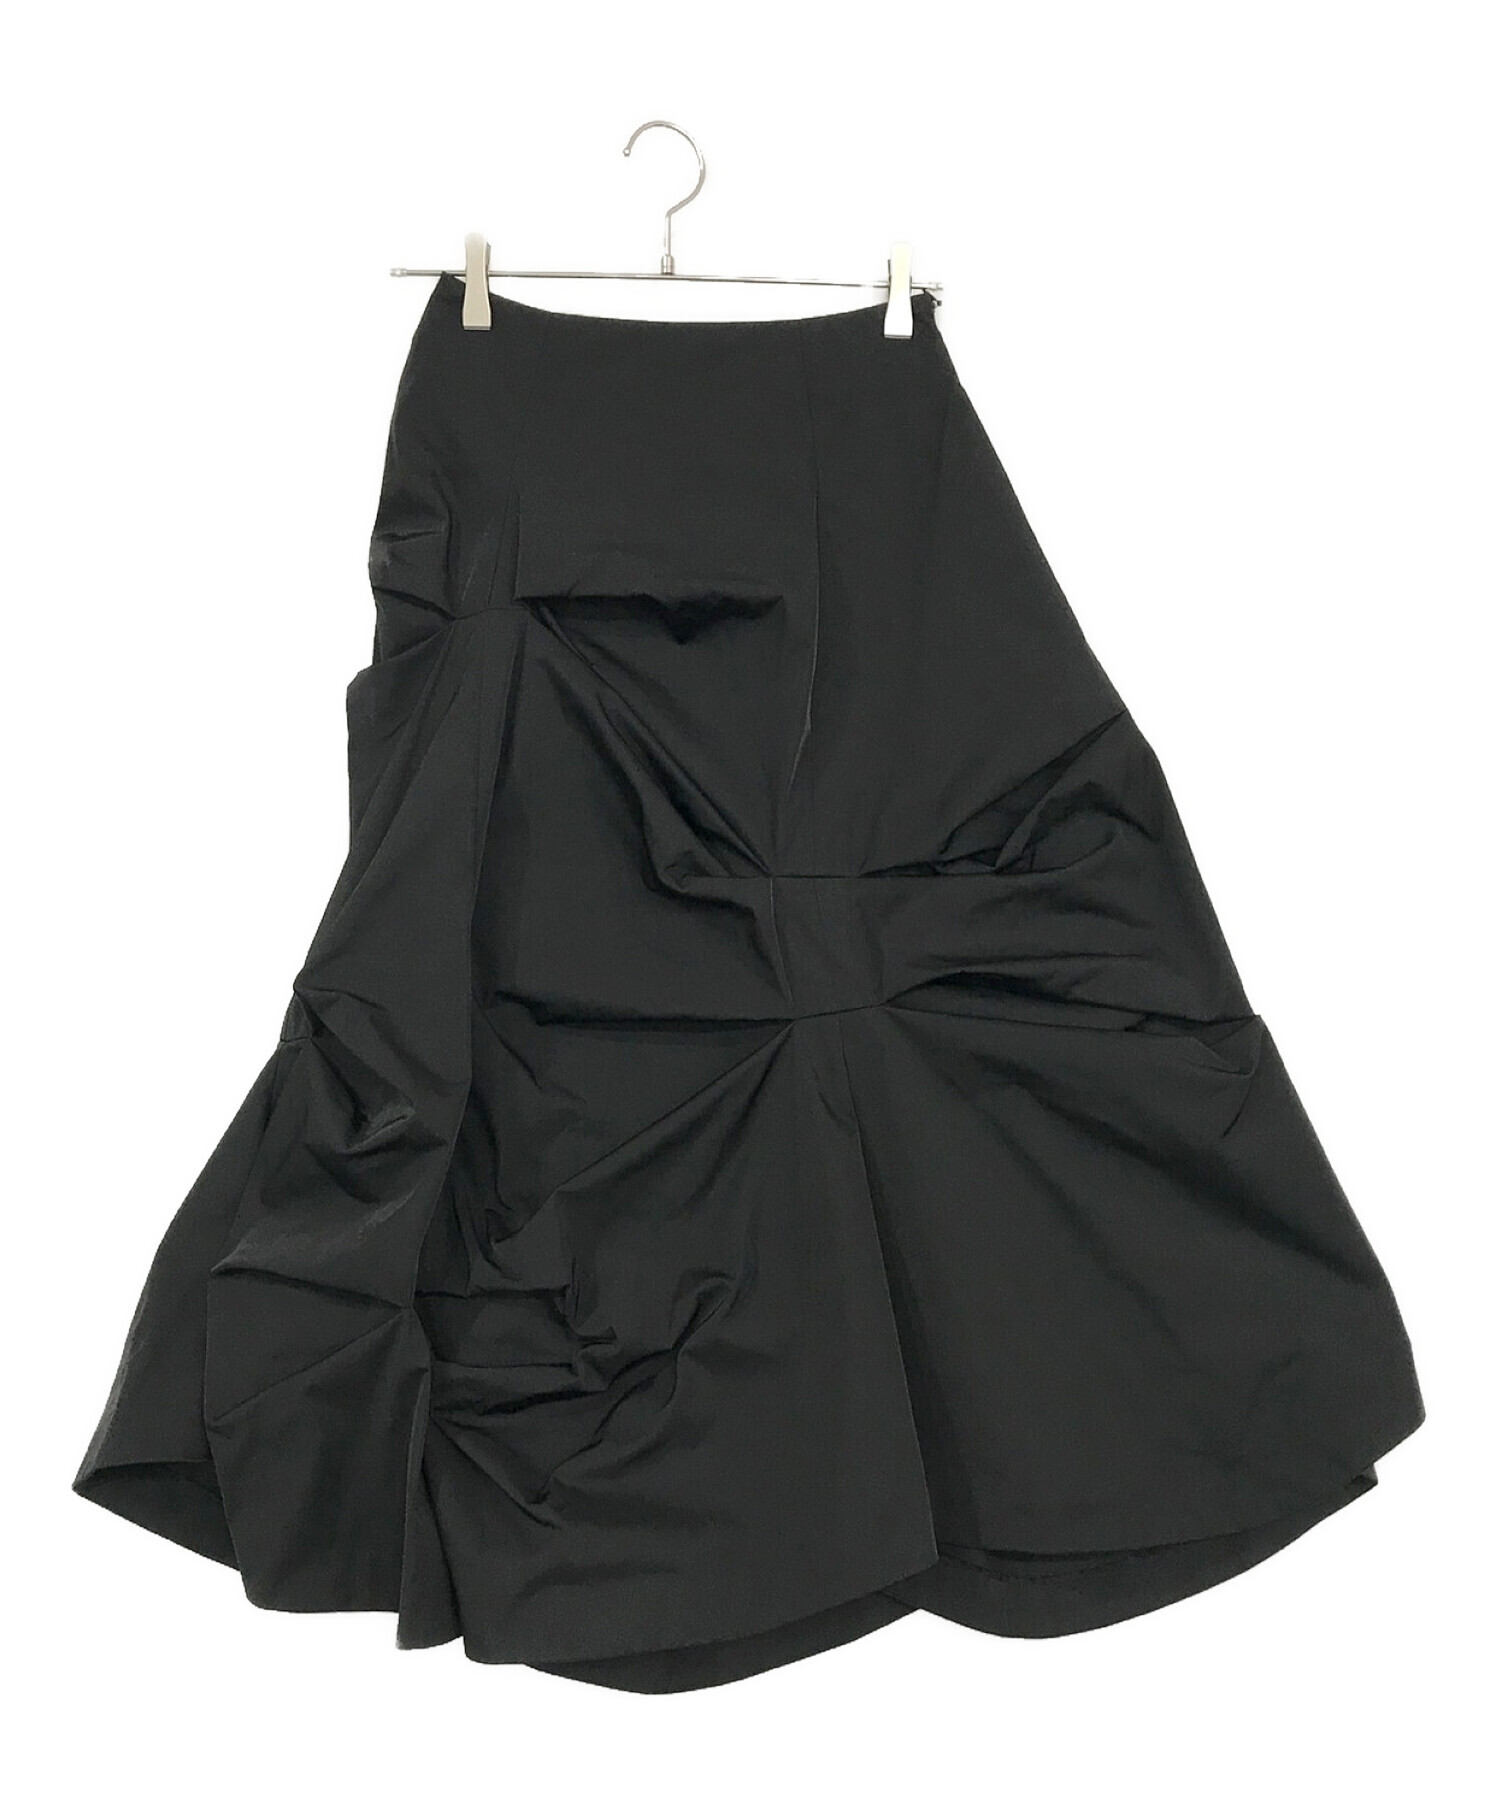 ENFOLD (エンフォルド) メモリーツイル ランダムタック スカート ブラック サイズ:SIZE 36